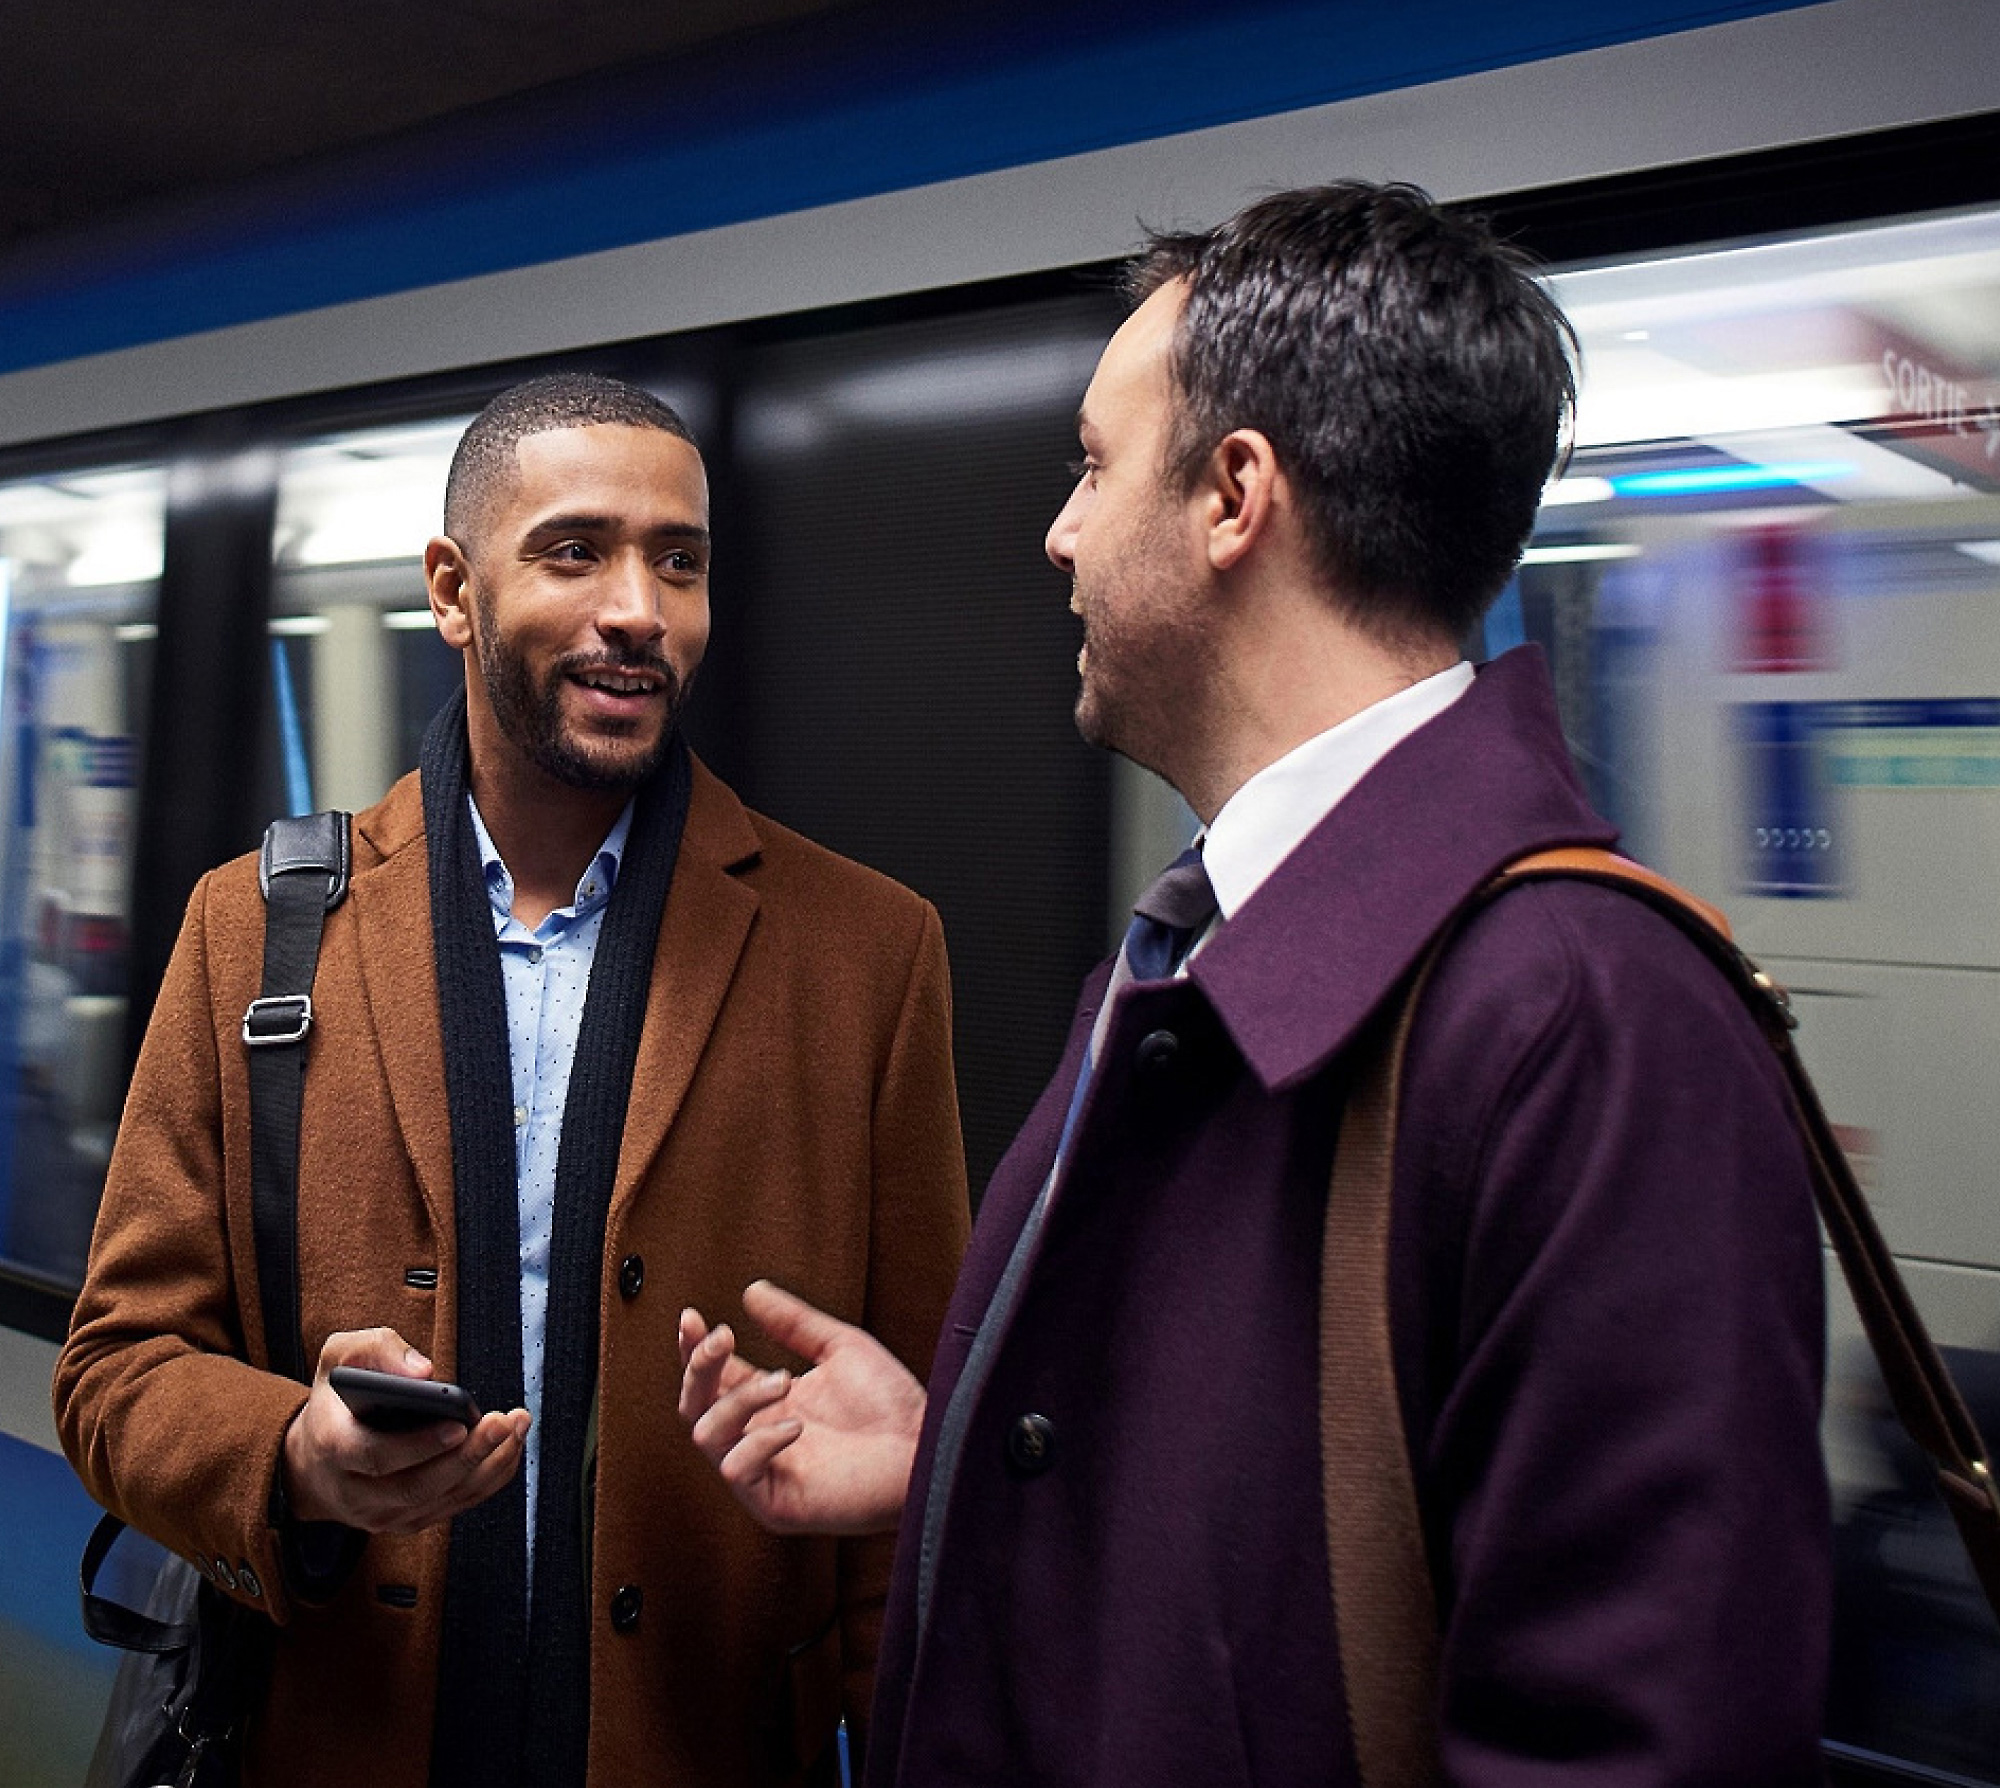 رجلان يتحدثان على رصيف مترو الأنفاق، يحمل أحدهما هاتفًا ذكيًا وقطارًا يتحرك خلفهما بشكل غير واضح.